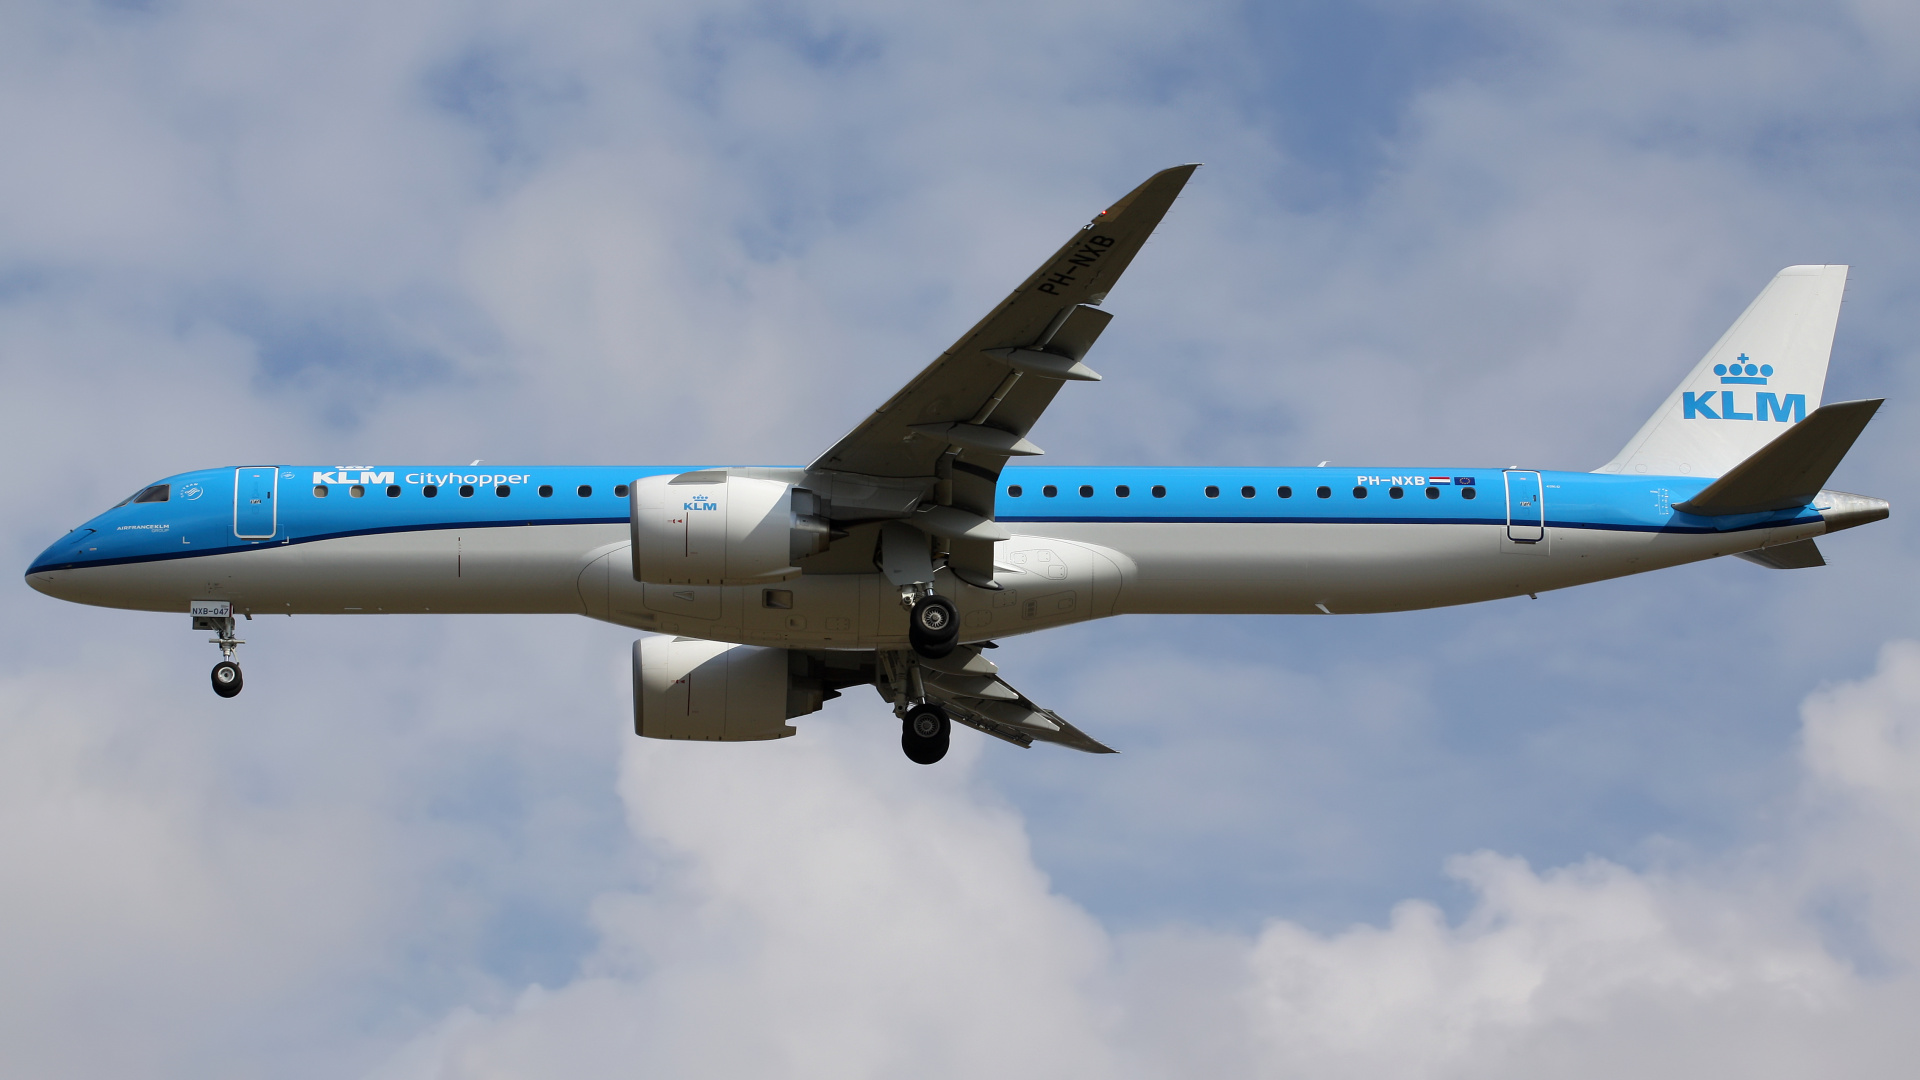 PH-NXB (Aircraft » EPWA Spotting » Embraer E195-E2 » KLM Cityhopper)